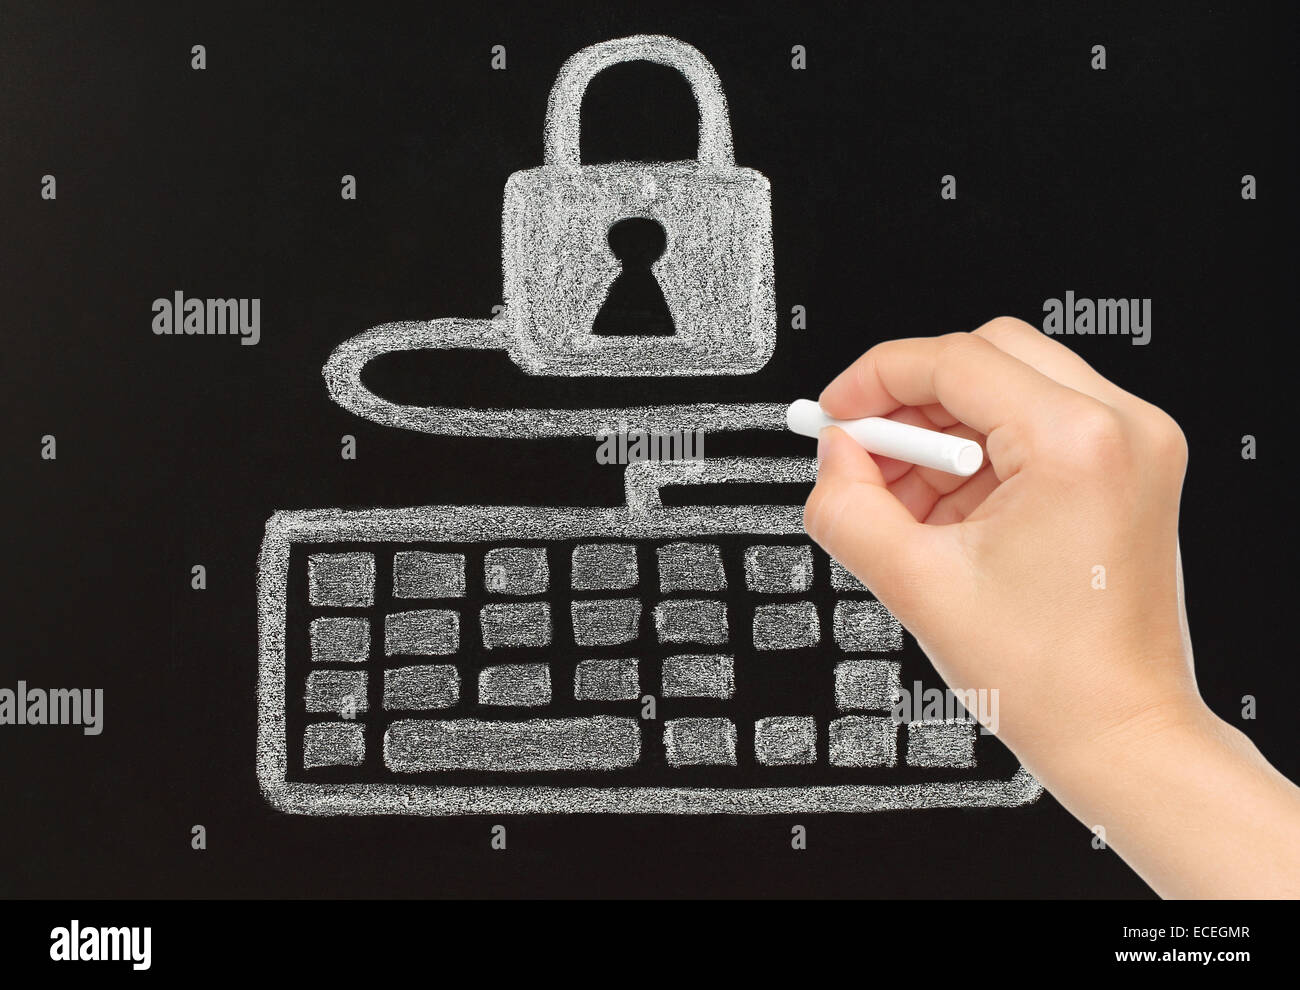 Dessin à la main avec de la craie, verrouillage clavier connecté à un concept de sécurité Banque D'Images